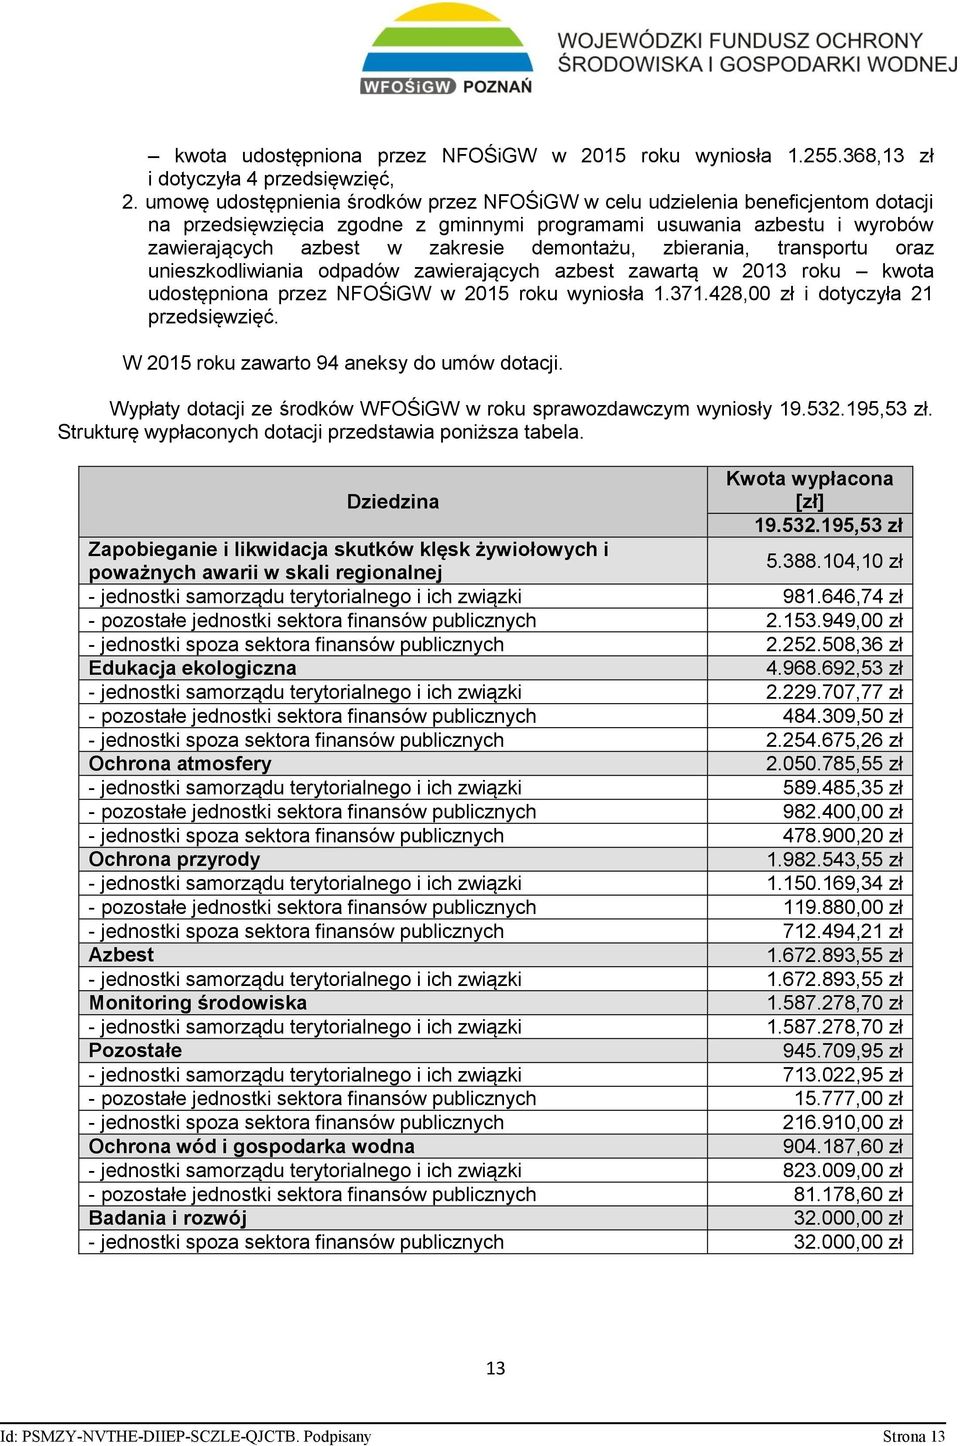 zbierania, transportu oraz unieszkodliwiania odpadów zawierających azbest zawartą w 2013 roku kwota udostępniona przez NFOŚiGW w 2015 roku wyniosła 1.371.428,00 zł i dotyczyła 21 przedsięwzięć.